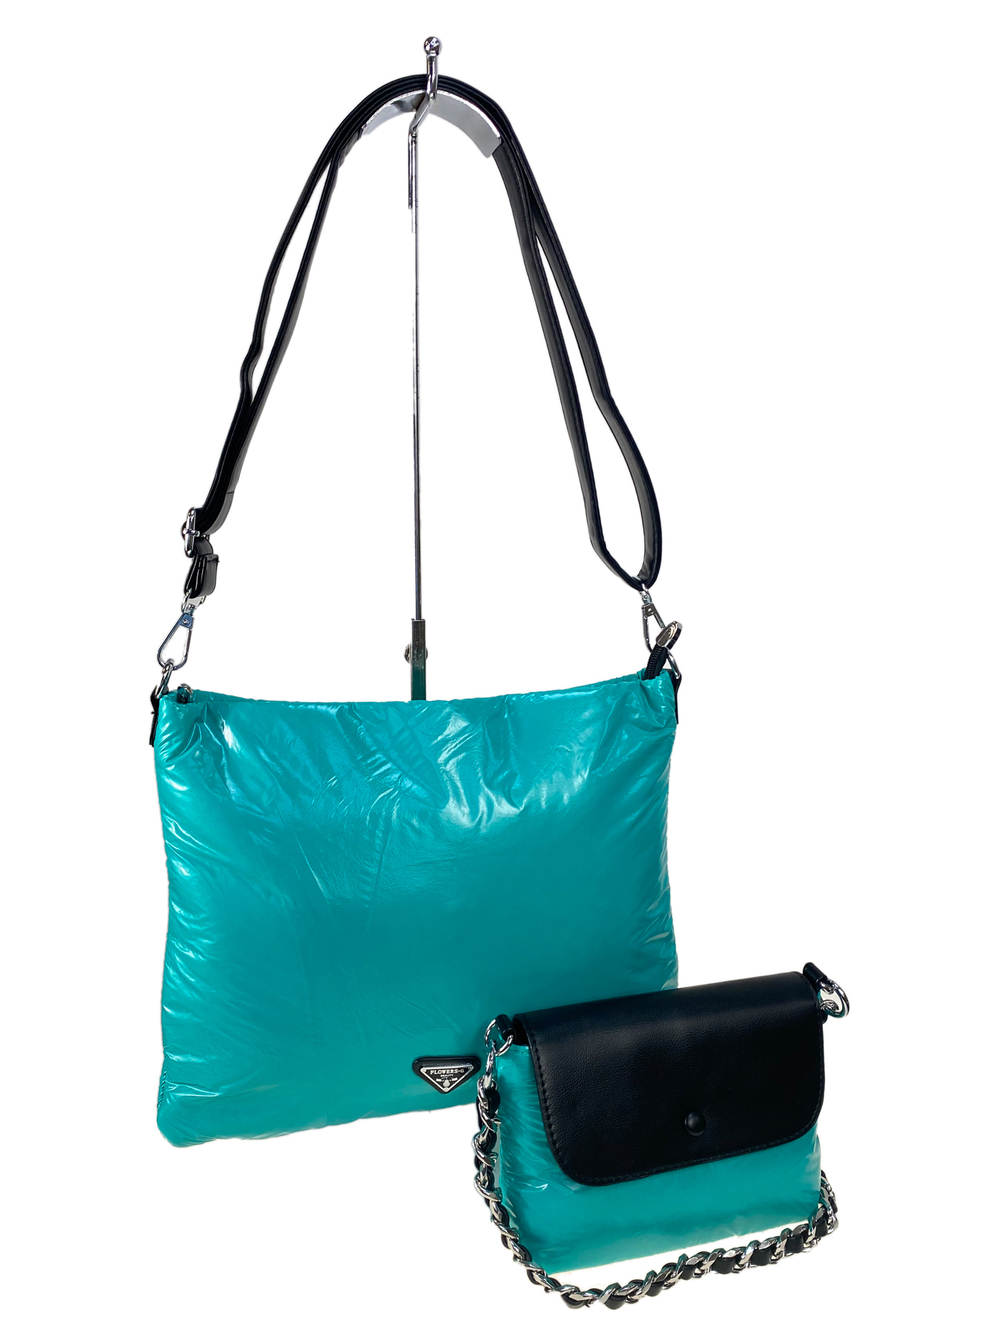 Cтильная женская сумка-шоппер из водоотталкивающей ткани, цвет бирюзовый